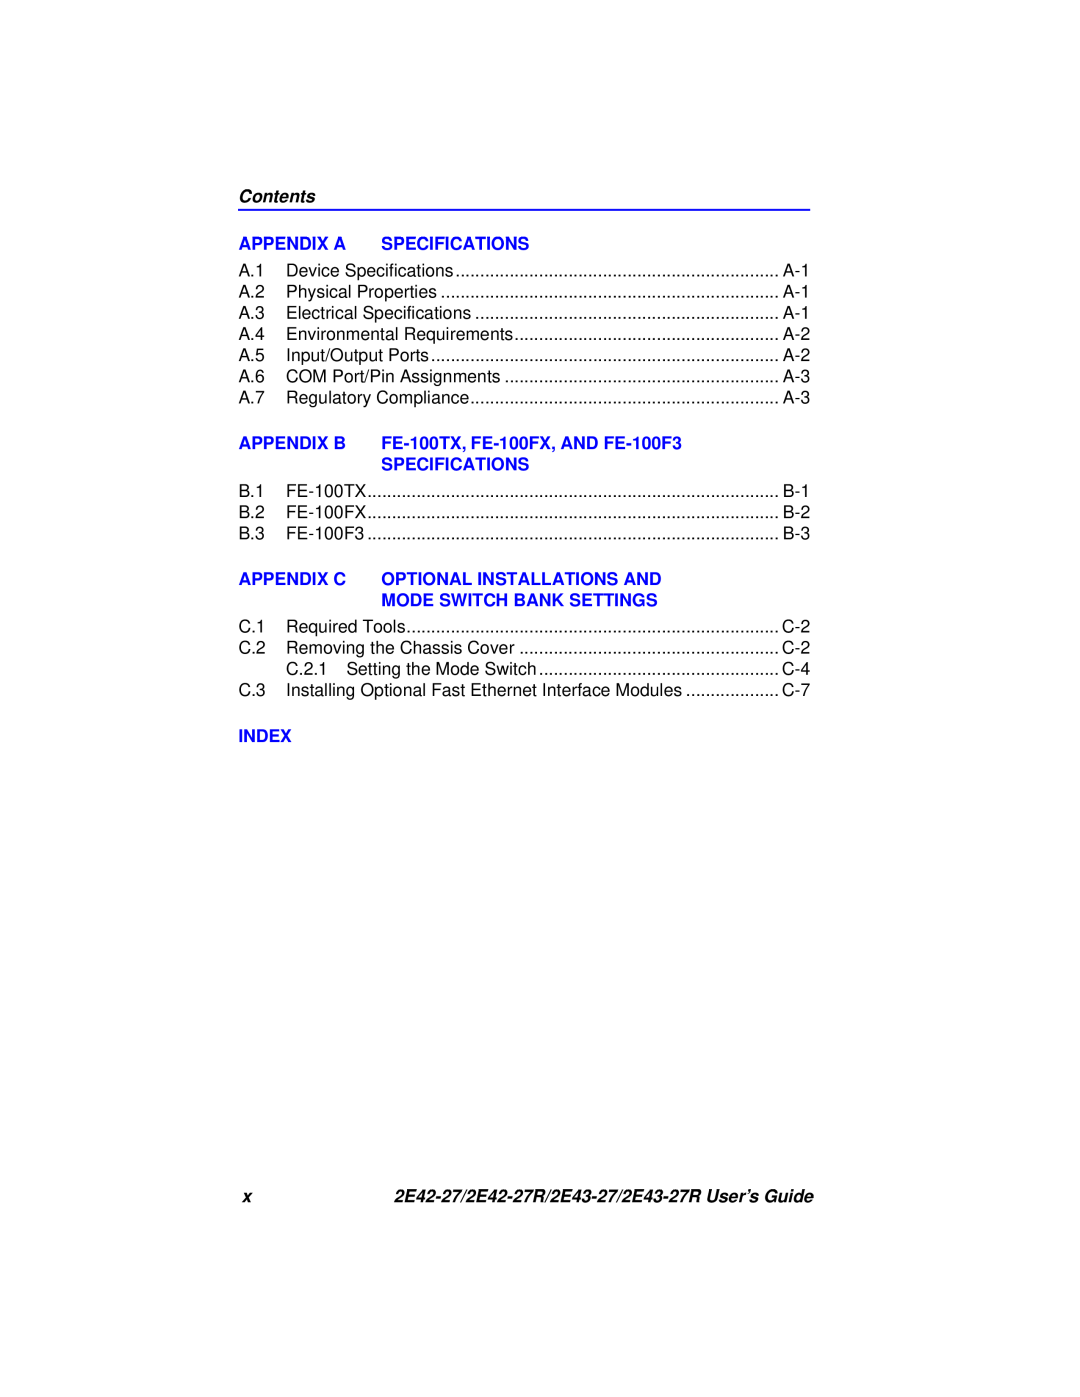 Cabletron Systems 2E43-27 Contents, Appendix A, Specifications, Appendix B, FE-100TX, FE-100FX, AND FE-100F3, Appendix C 